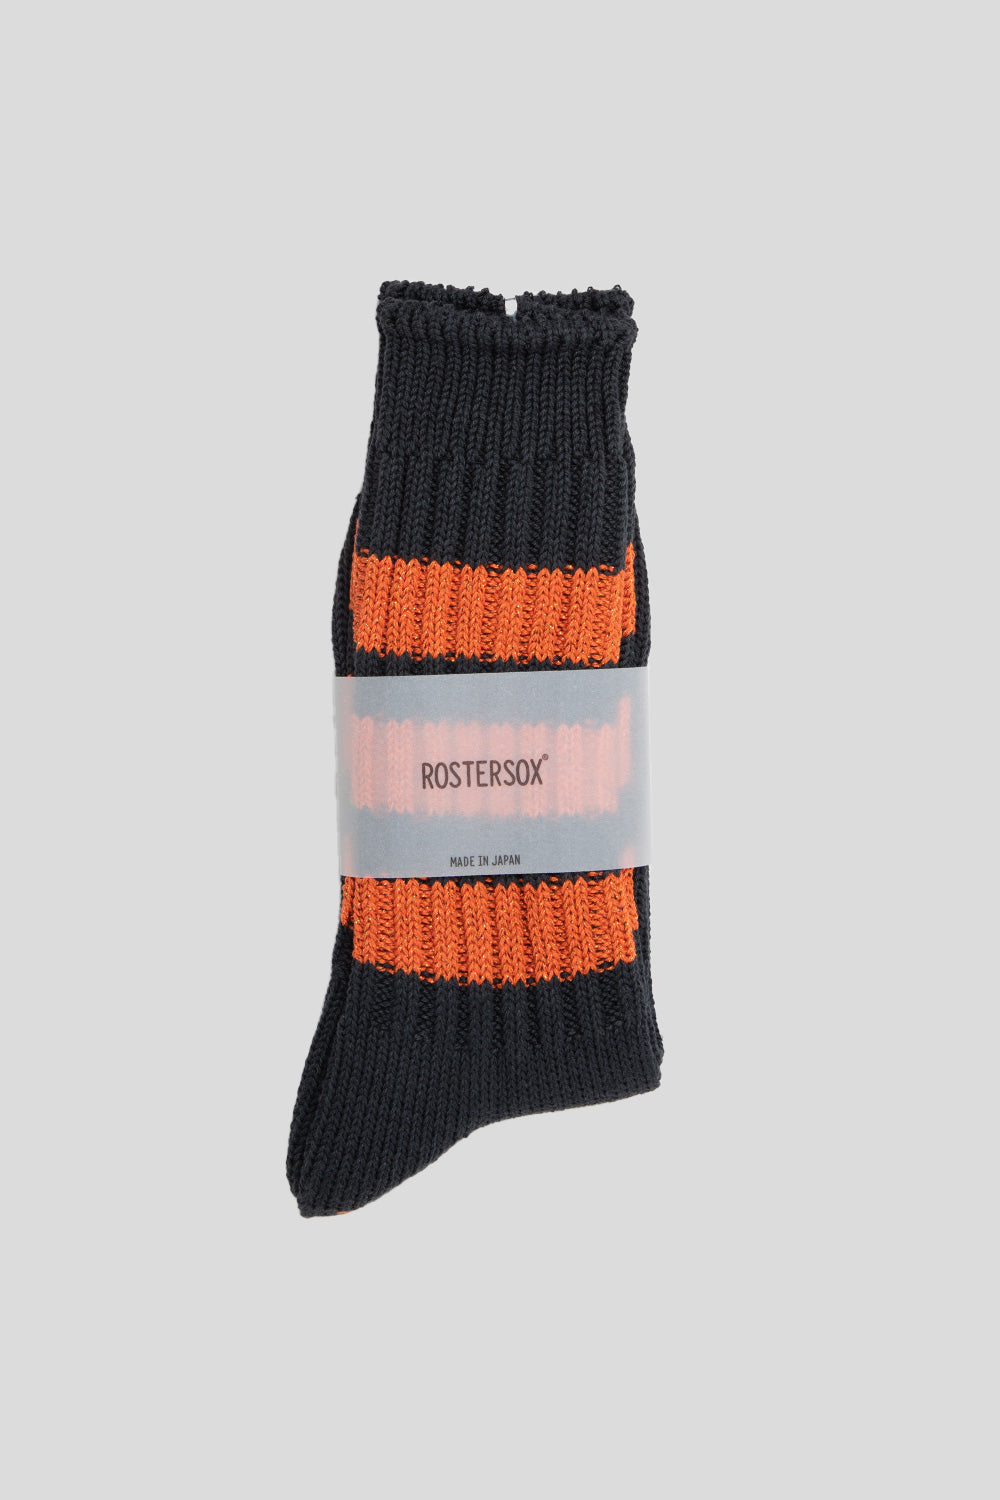 Rostersox Boston Socks in Orange